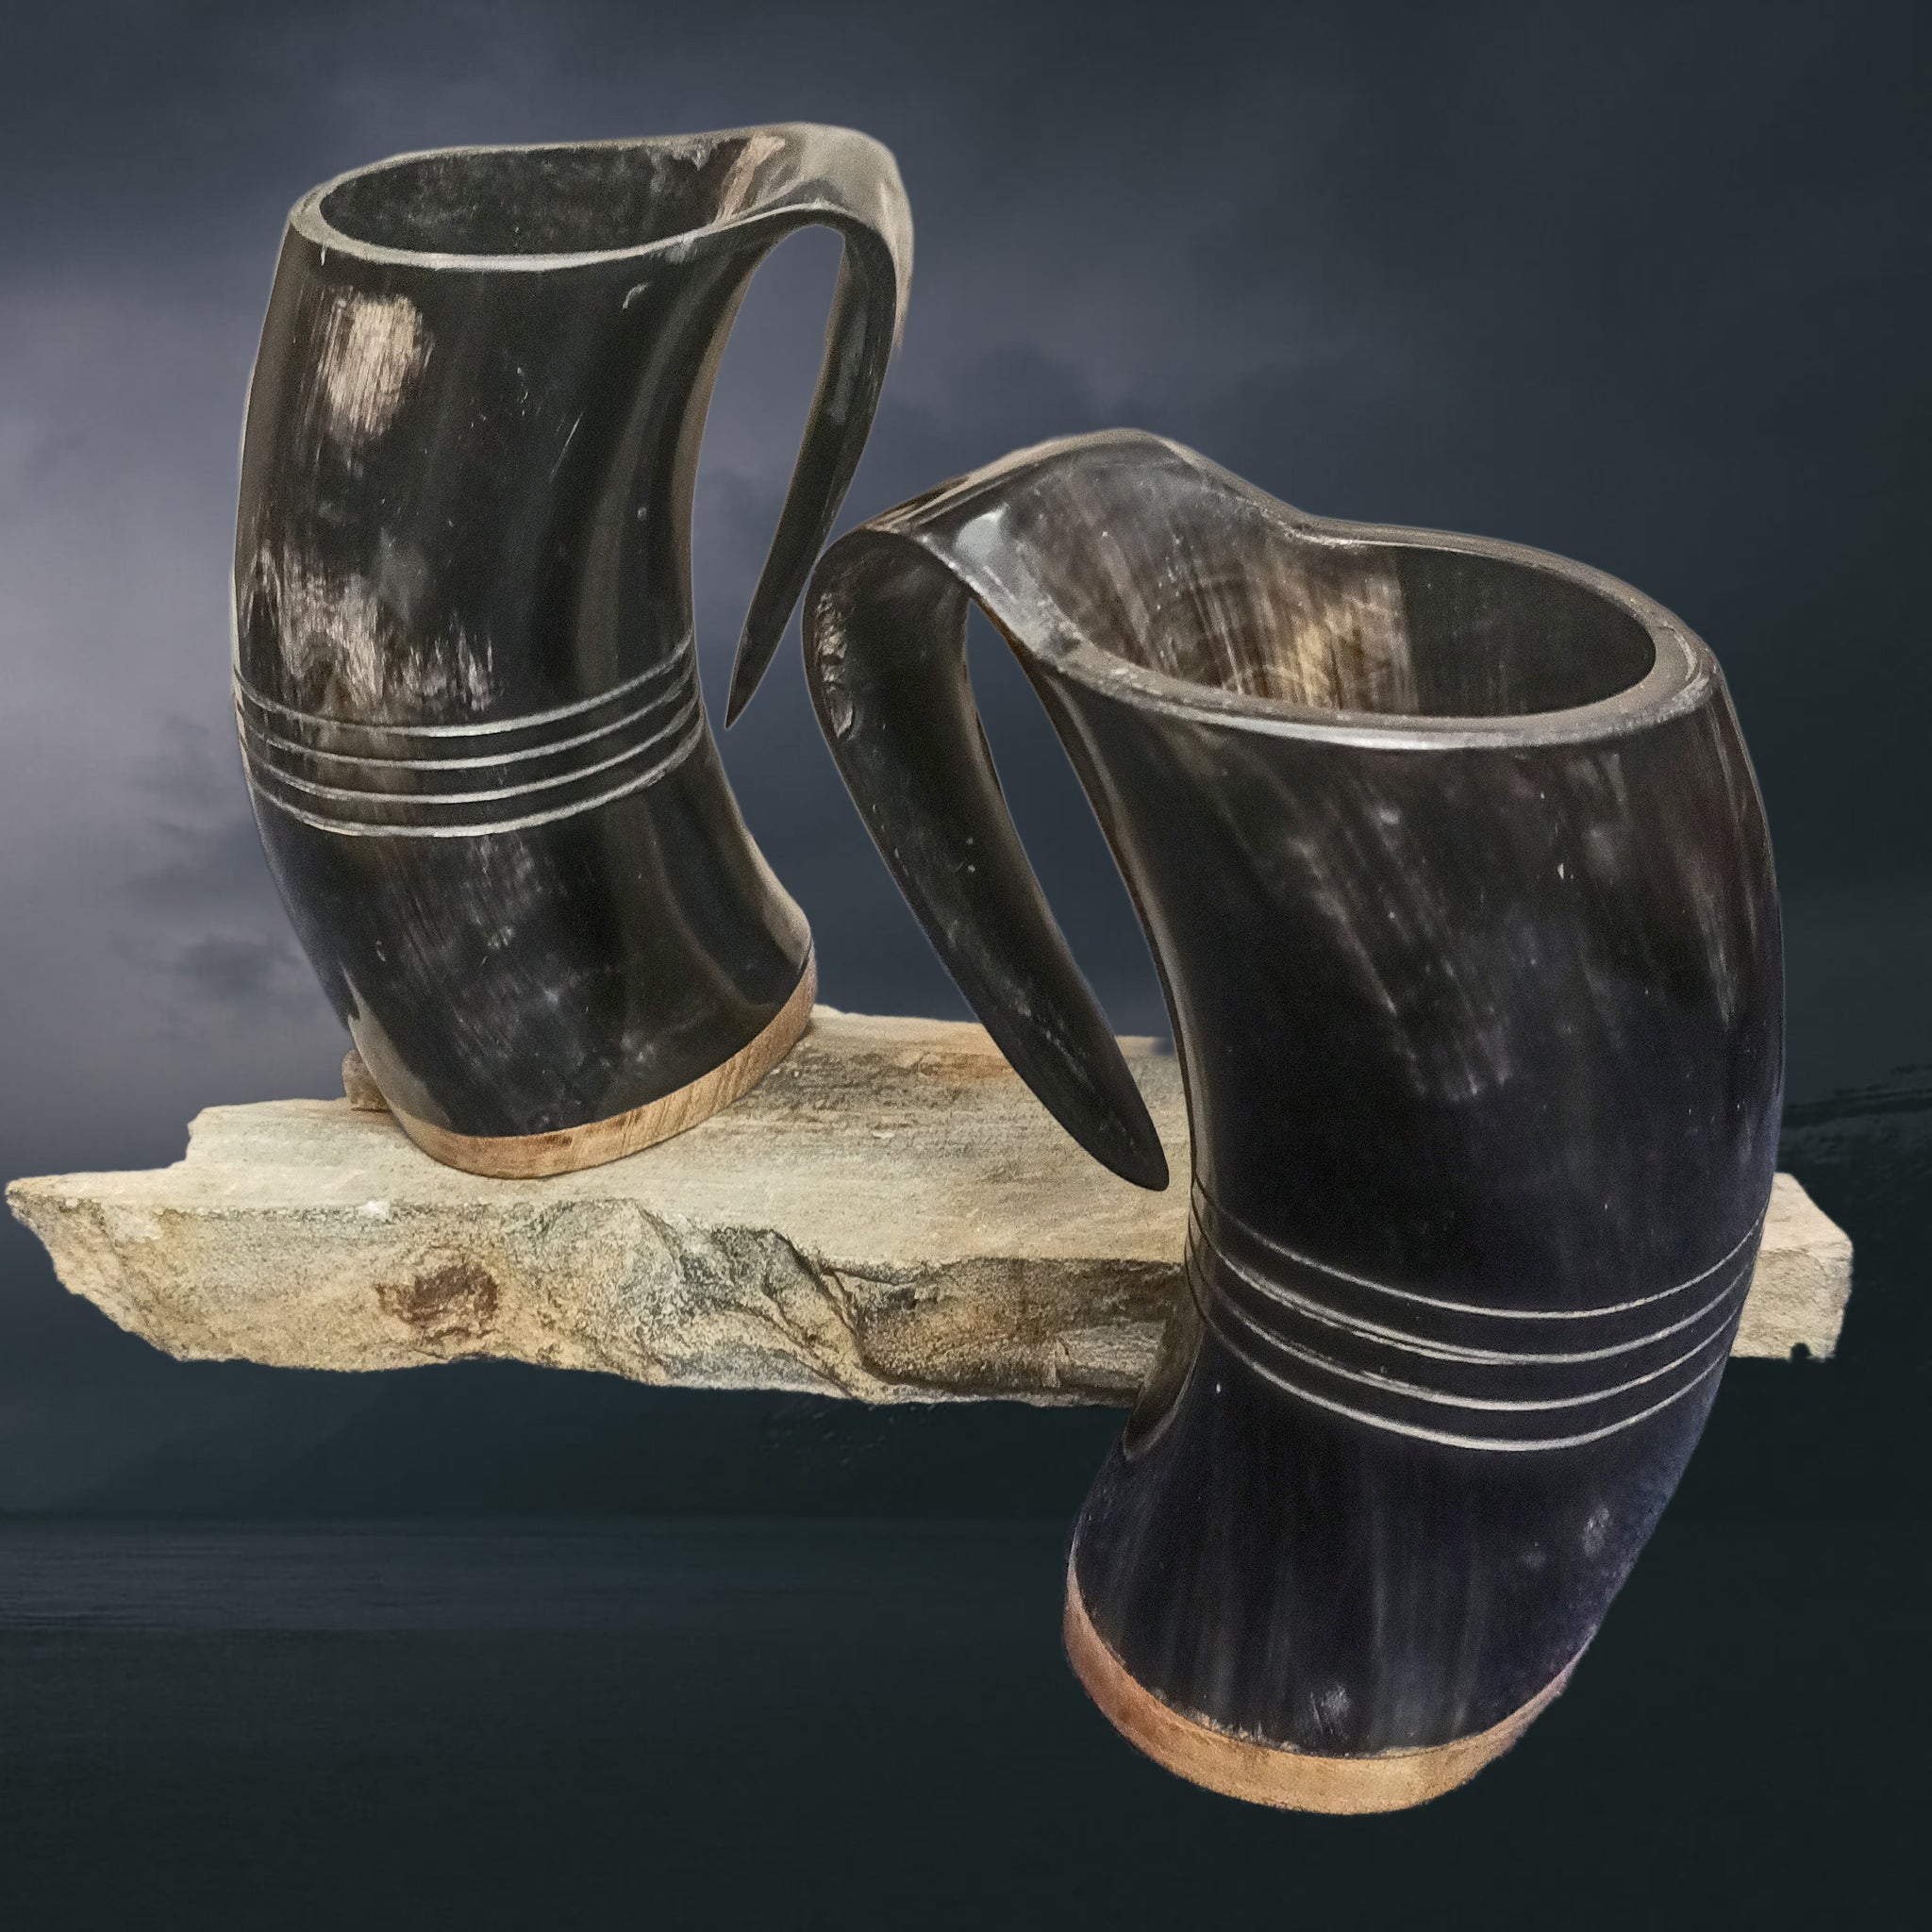 Polished & Treated Ox Horn Beer Mugs with Hardwood Base & Ridge design - Medium Size